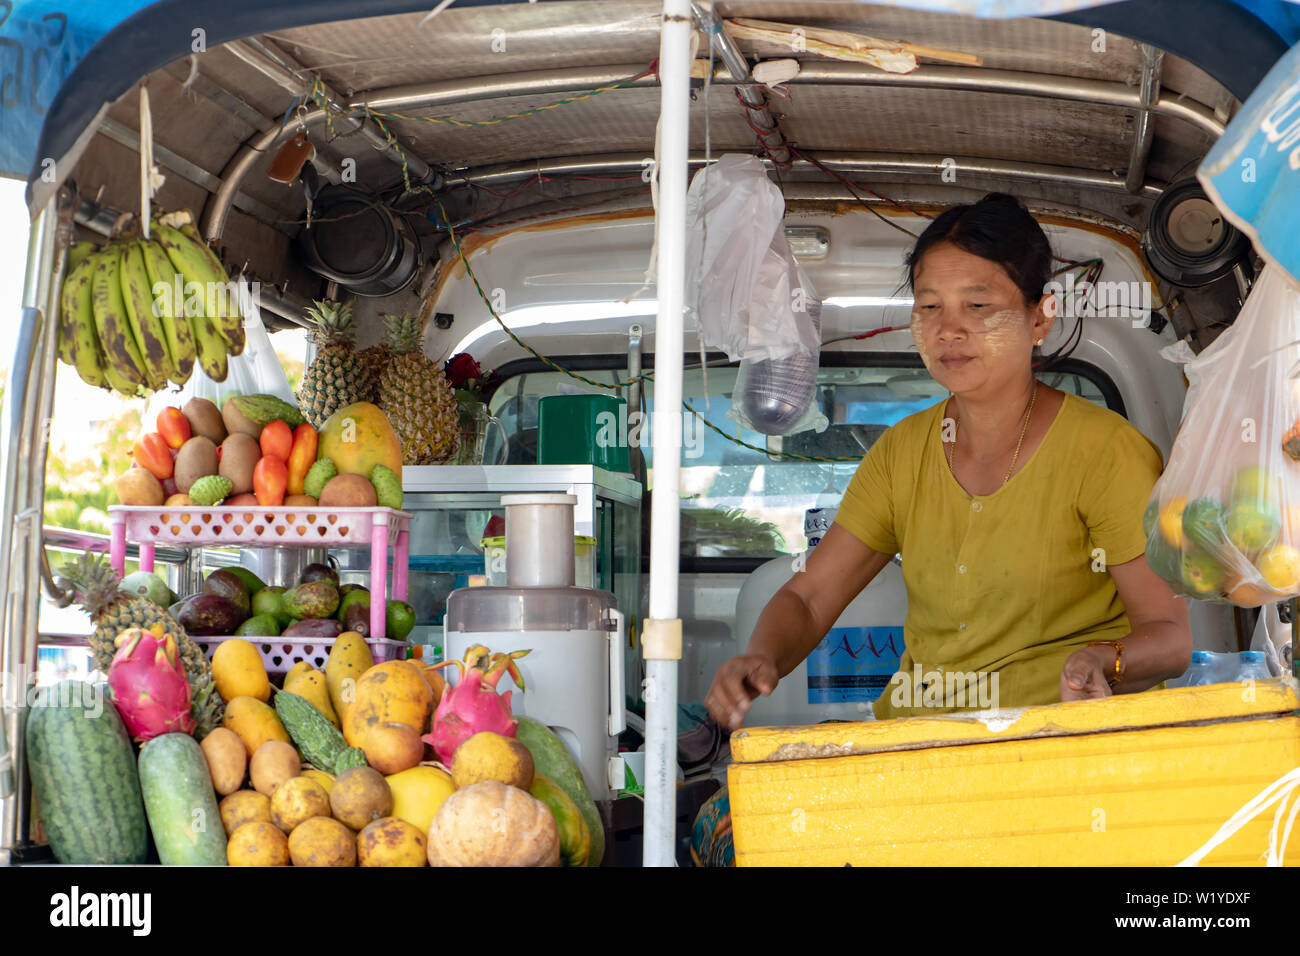 MANDALAY, Myanmar, 20. Mai 2018, asiatische Frau verkauft frisches Obst Getränke. Verkauf von Erfrischung in der Straße von einem Mobile Shop auf einem Auto. Stockfoto